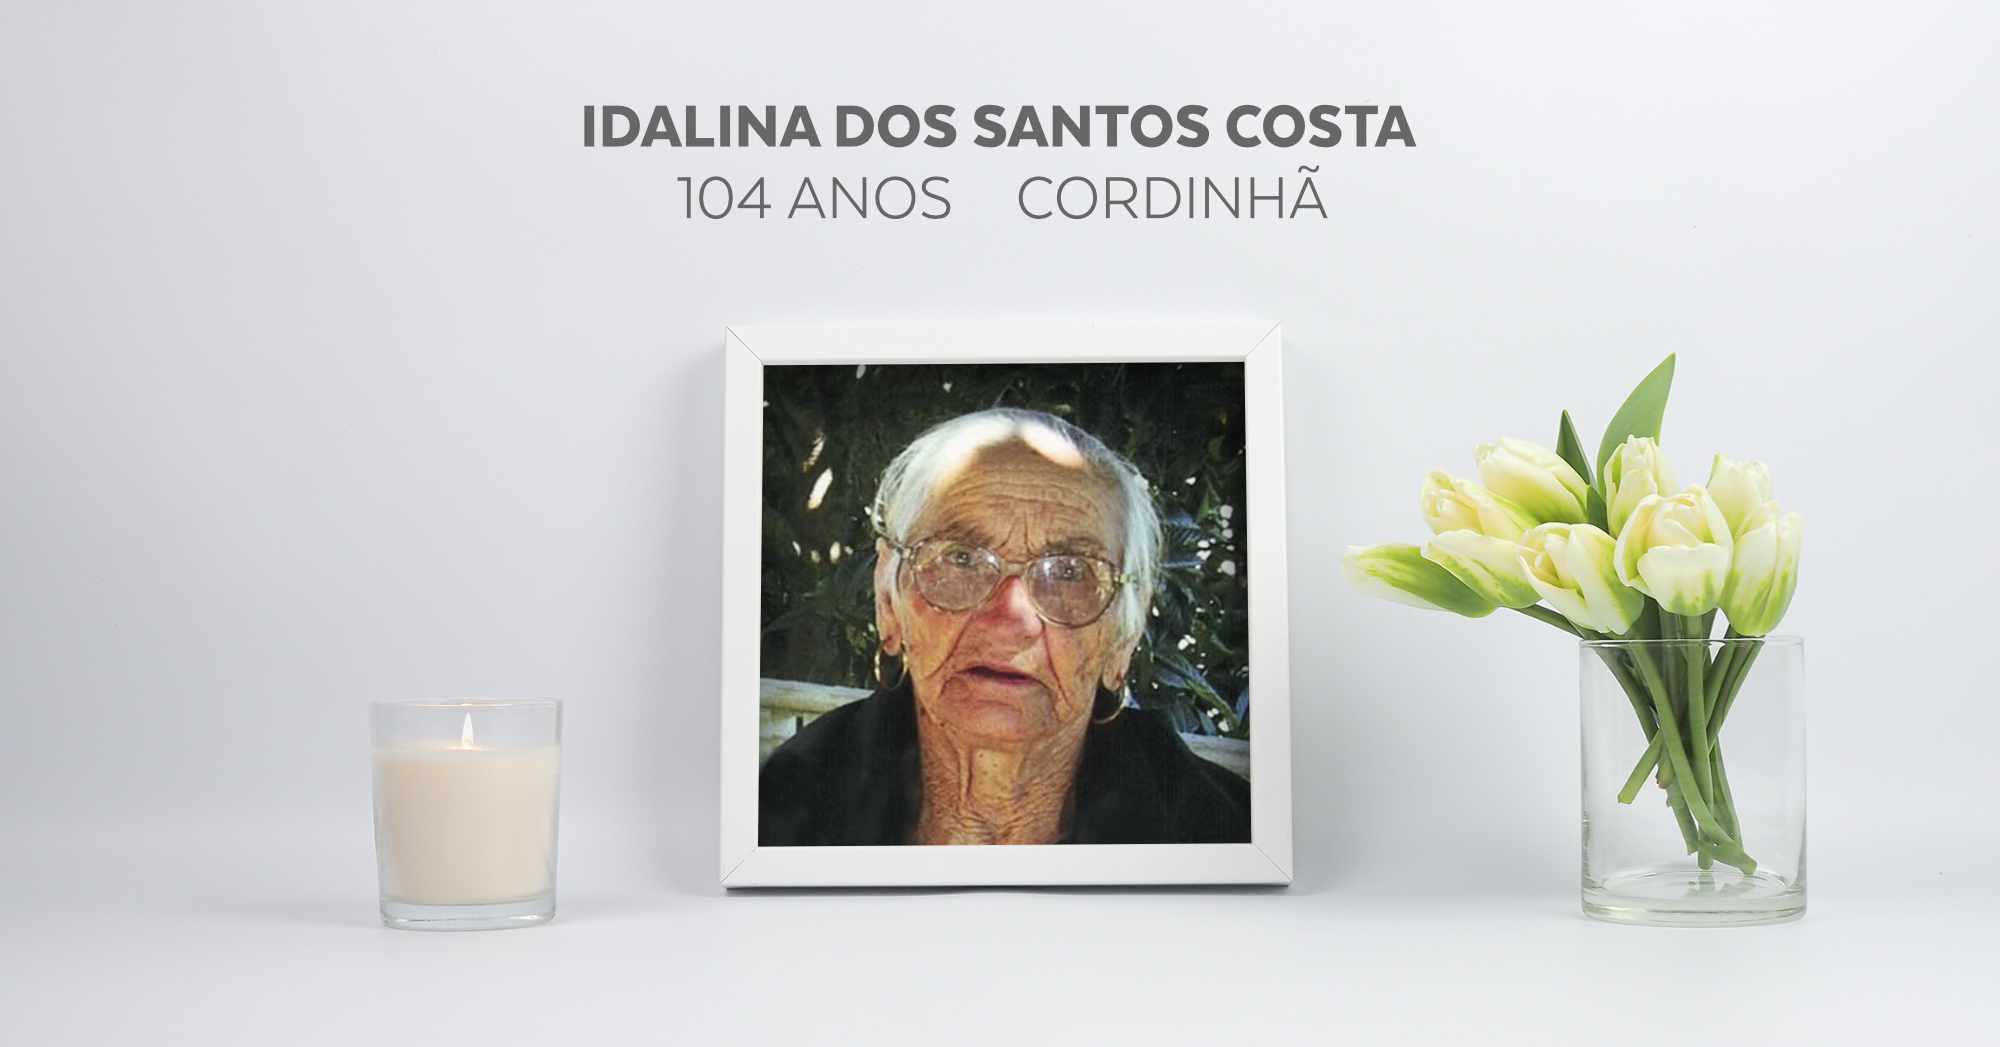 Idalina dos Santos Costa